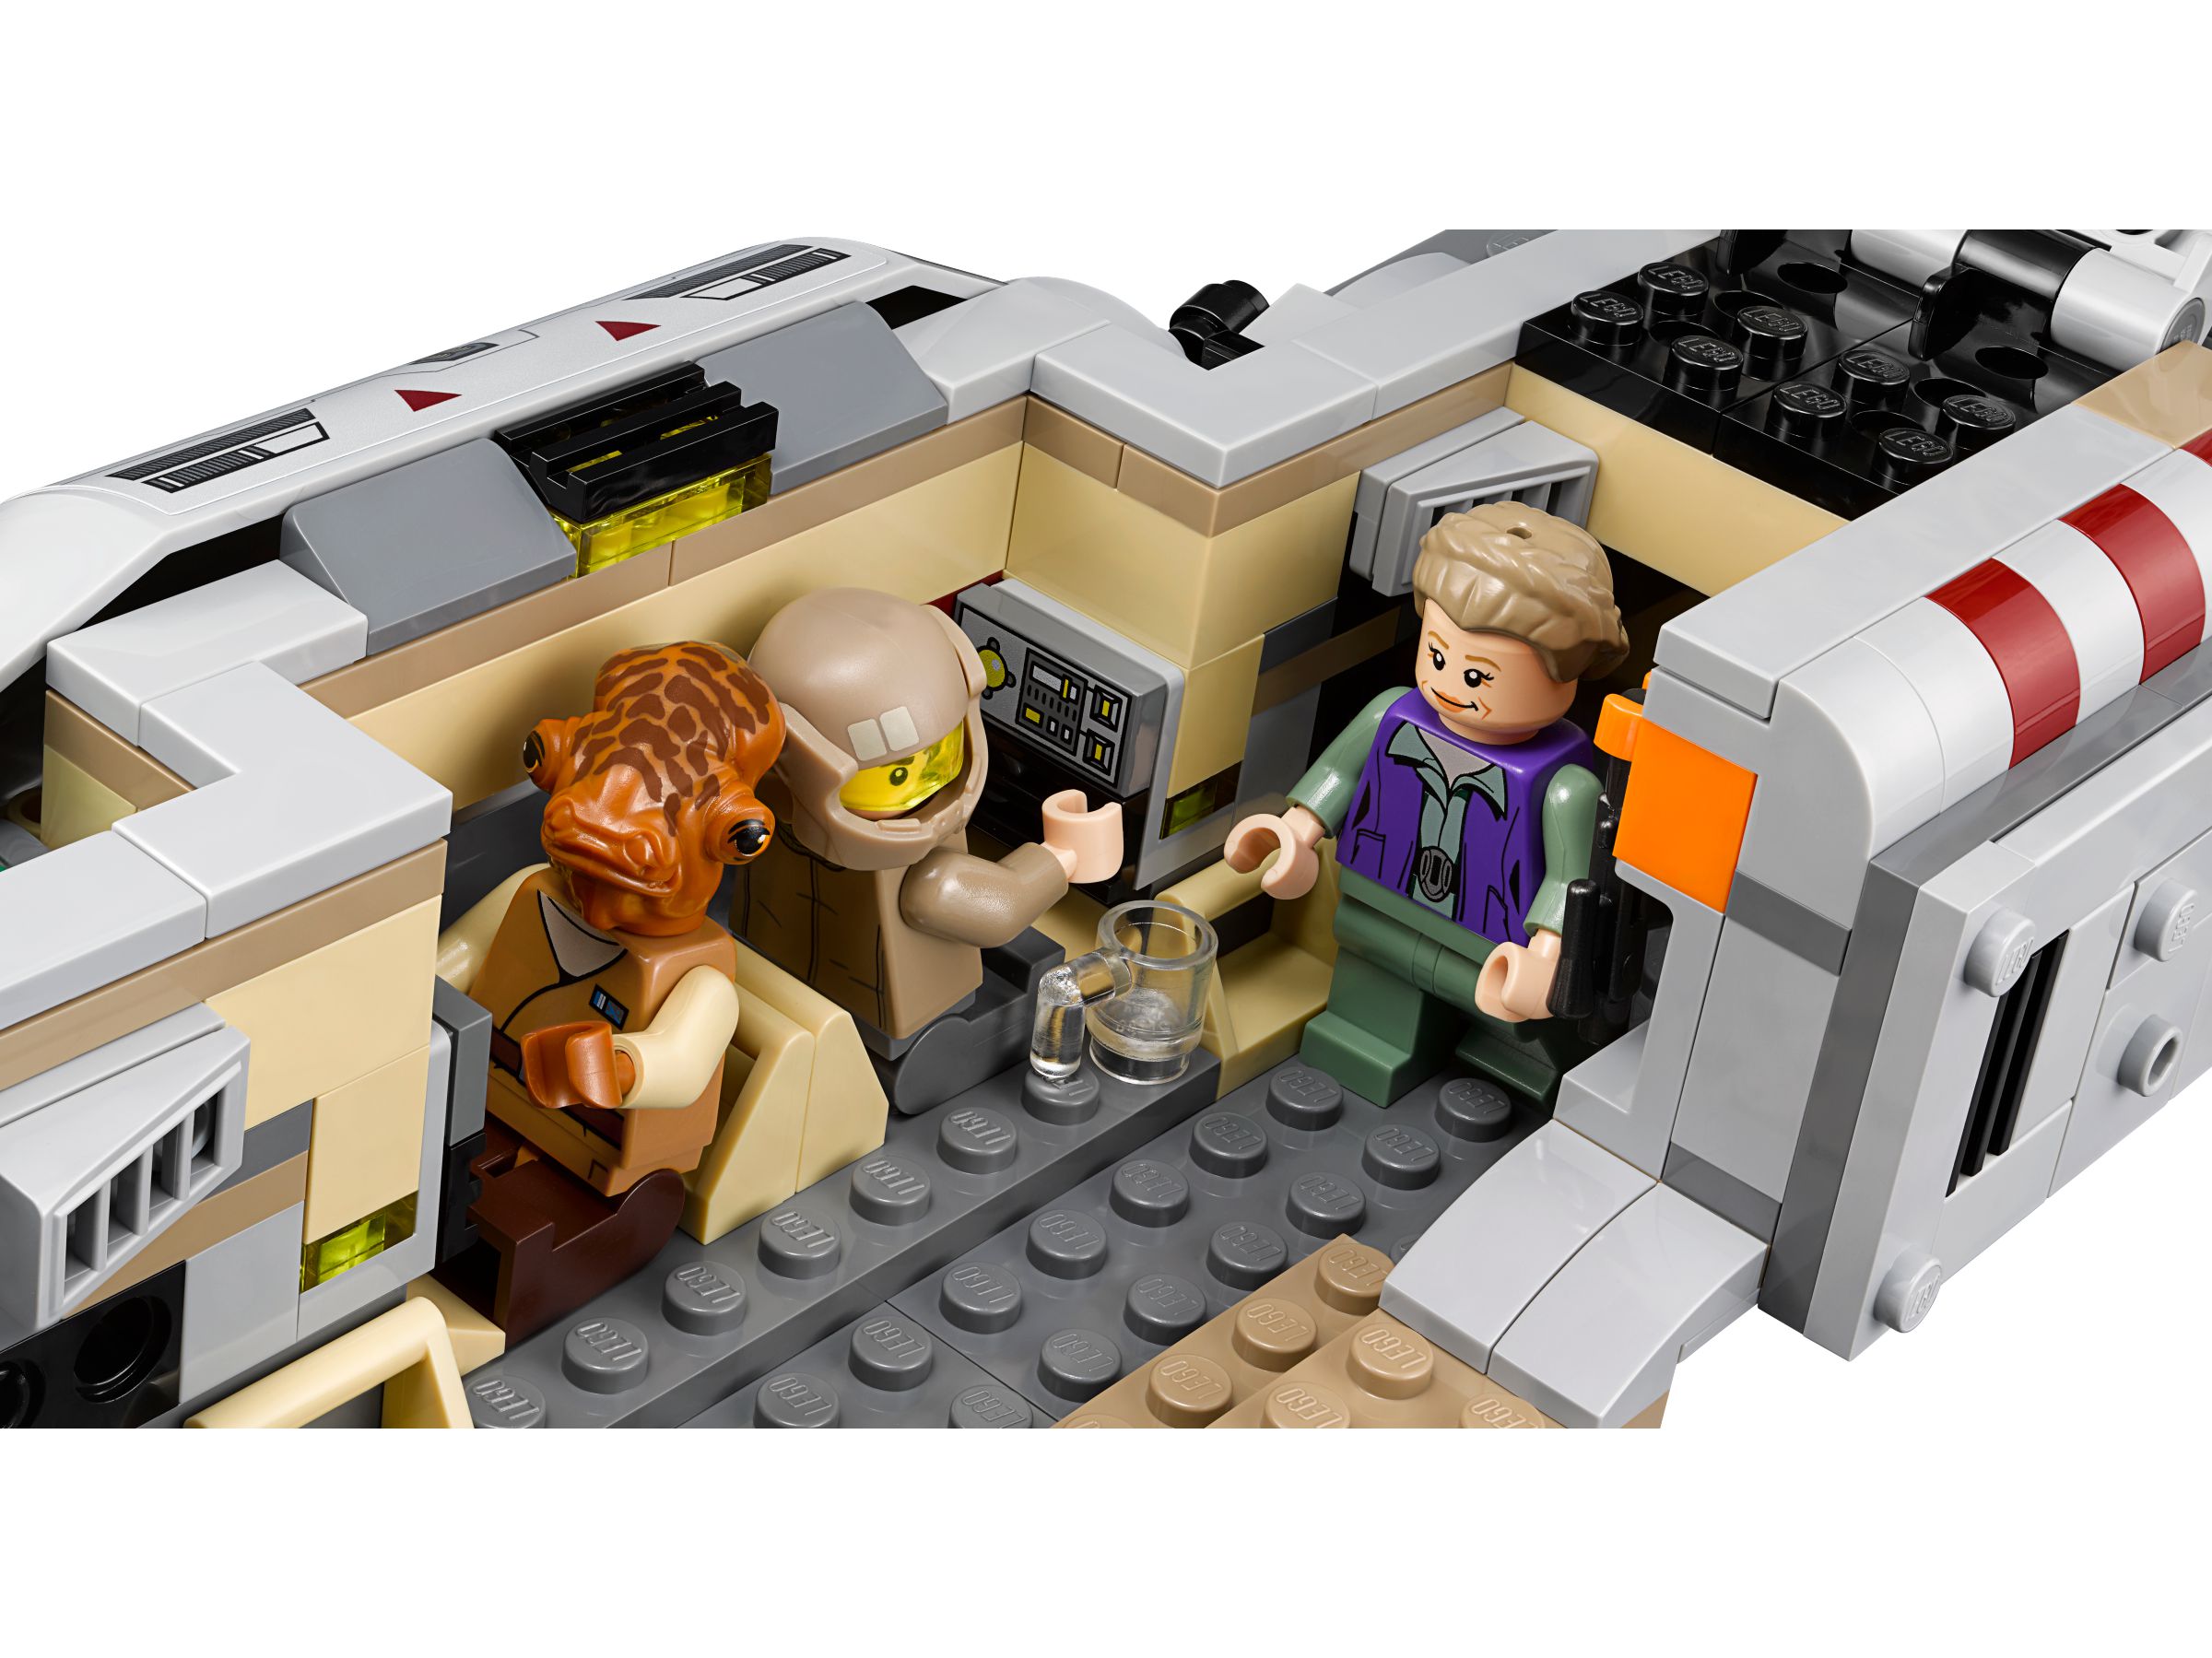 LEGO Star Wars 75140 Resistance Troop Transporter LEGO_75140_alt4.jpg